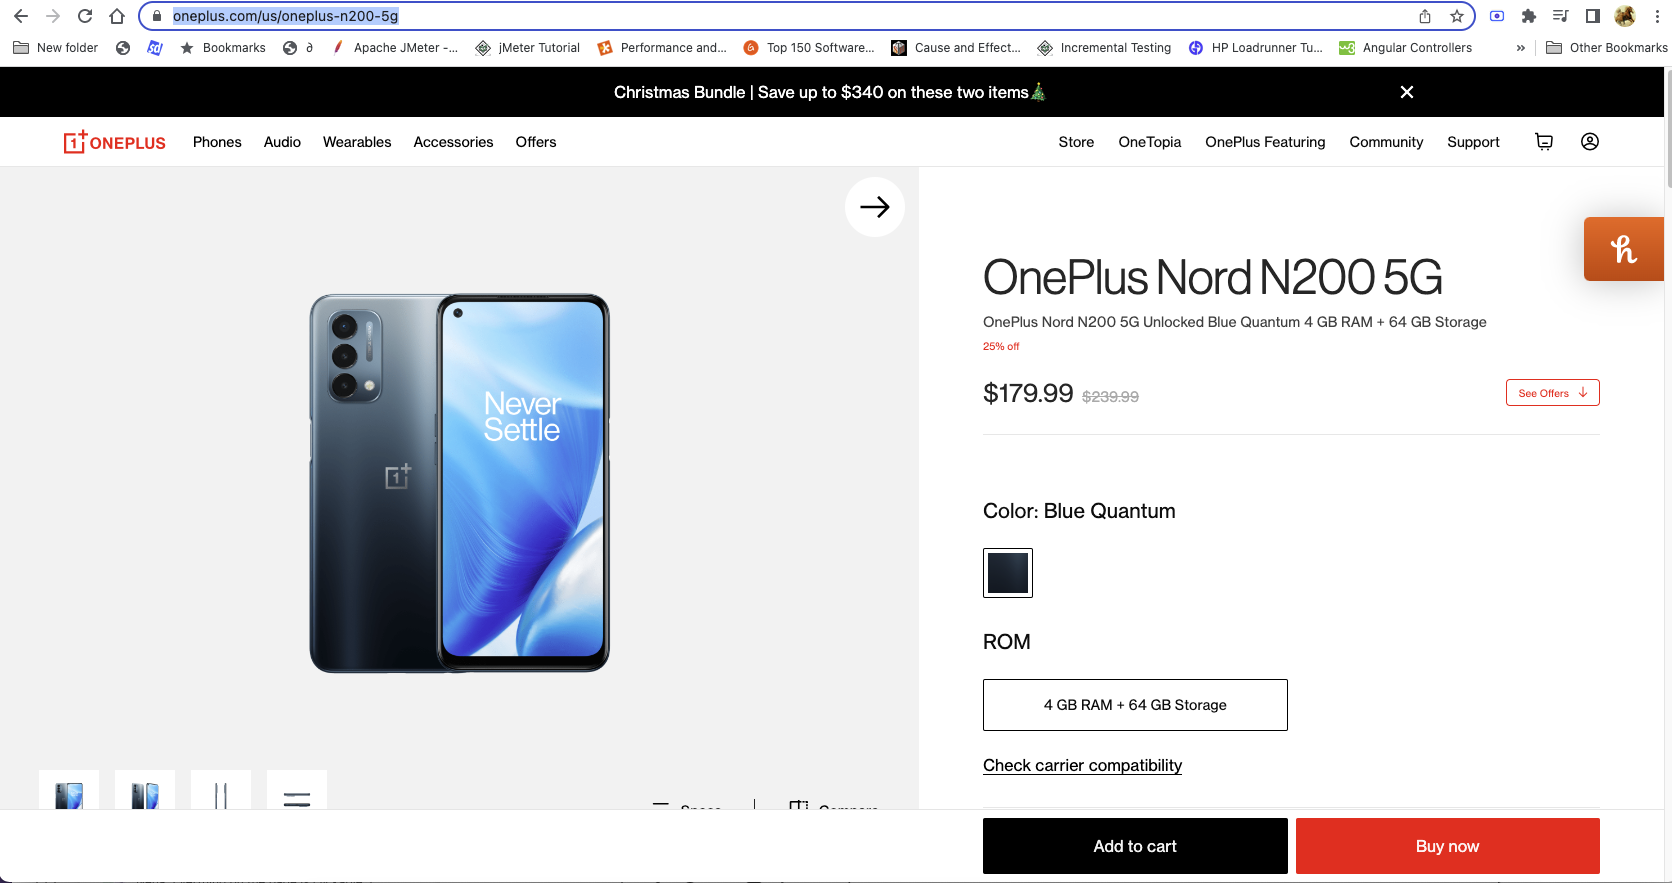 OnePlus N20 - $209 and OnePlus N200 - $149 with code N20N200